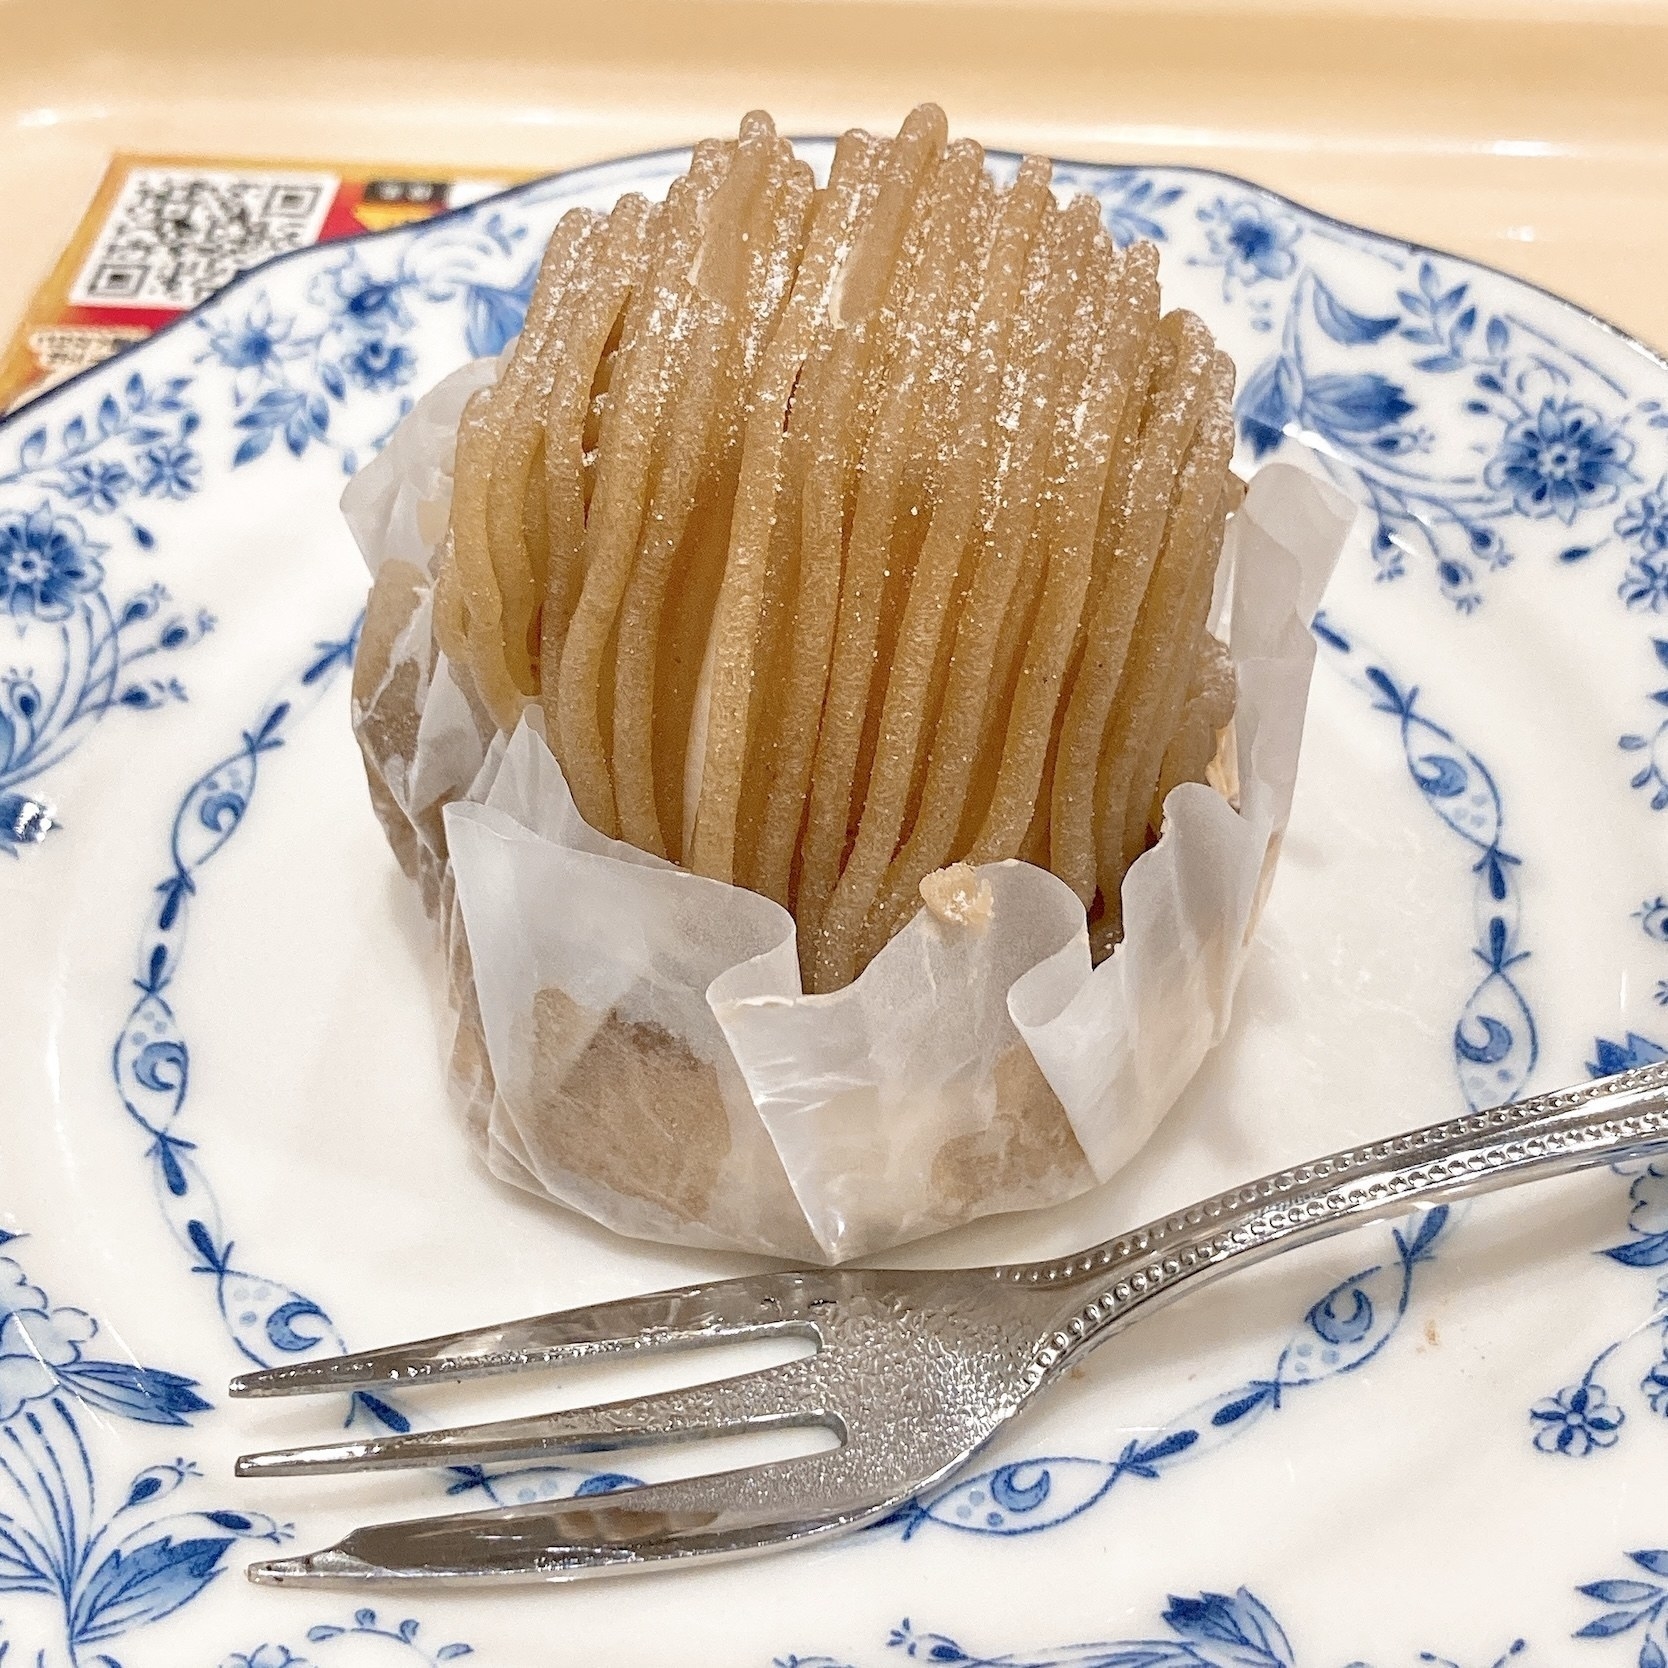 ドトールのおすすめケーキ「熊本県産和栗のモンブラン」